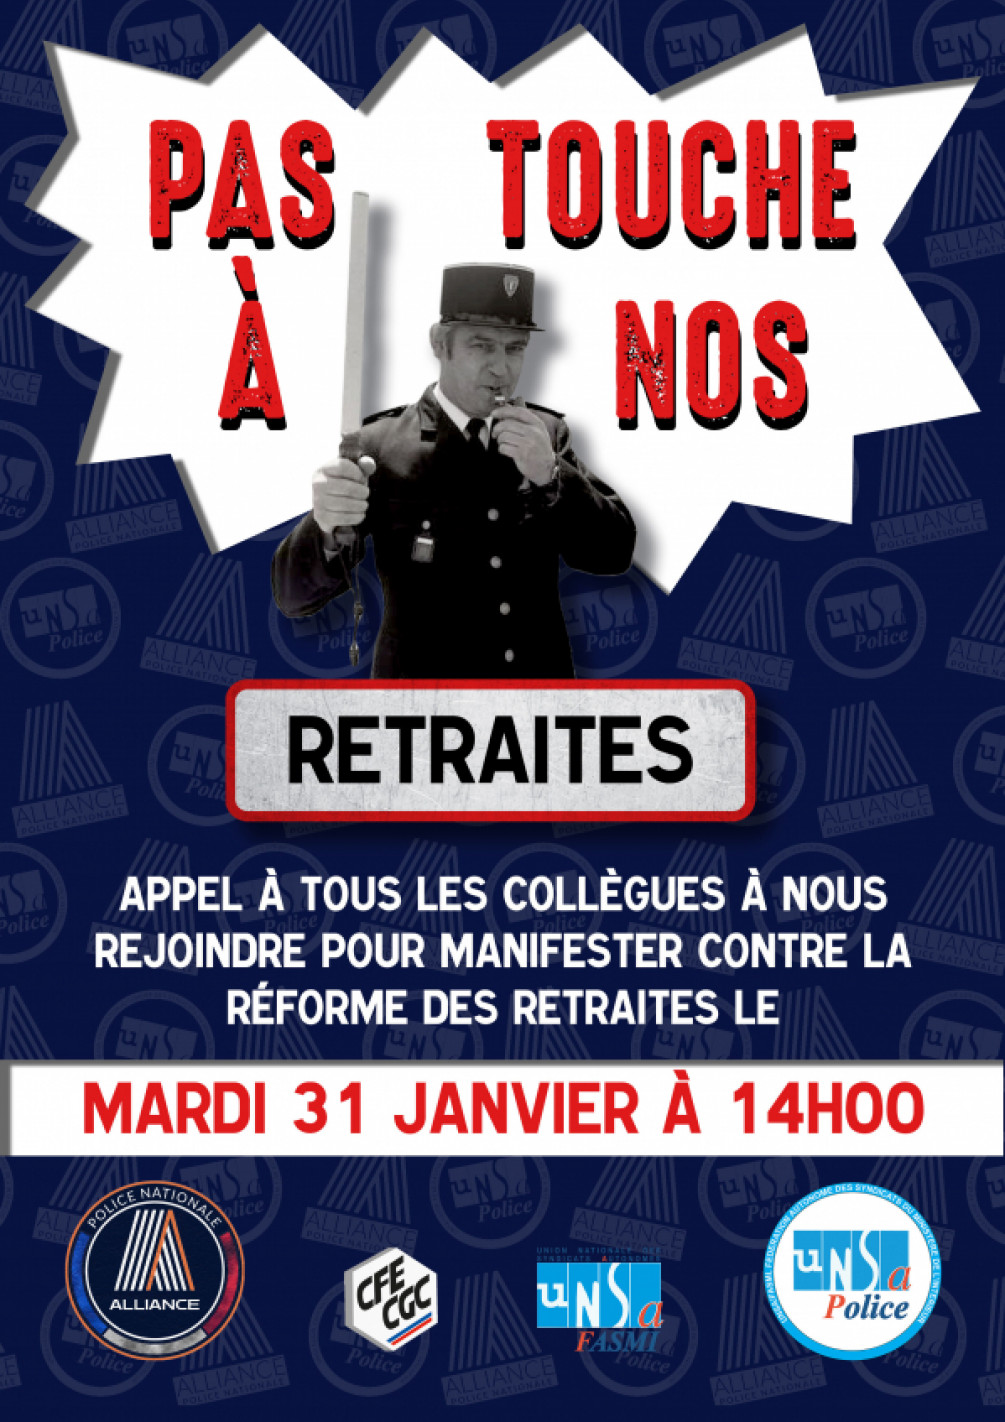 Appel à la manifestation contre la réforme des retraites le mardi 31 janvier à 14h00 à paris place d'Italie